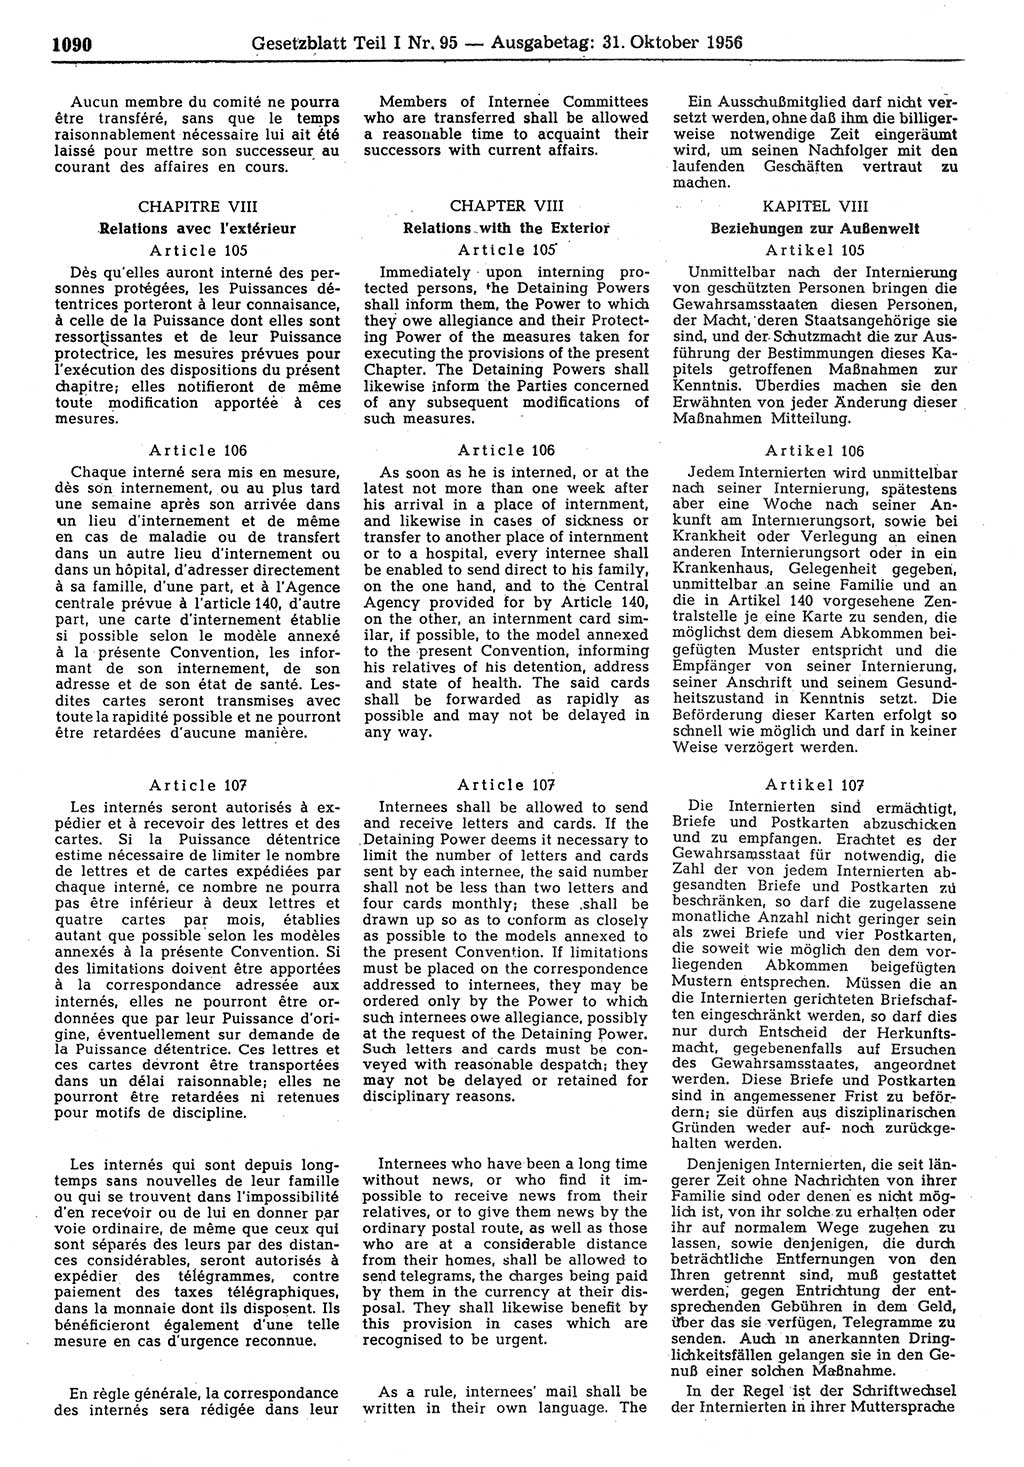 Gesetzblatt (GBl.) der Deutschen Demokratischen Republik (DDR) Teil Ⅰ 1956, Seite 1090 (GBl. DDR Ⅰ 1956, S. 1090)